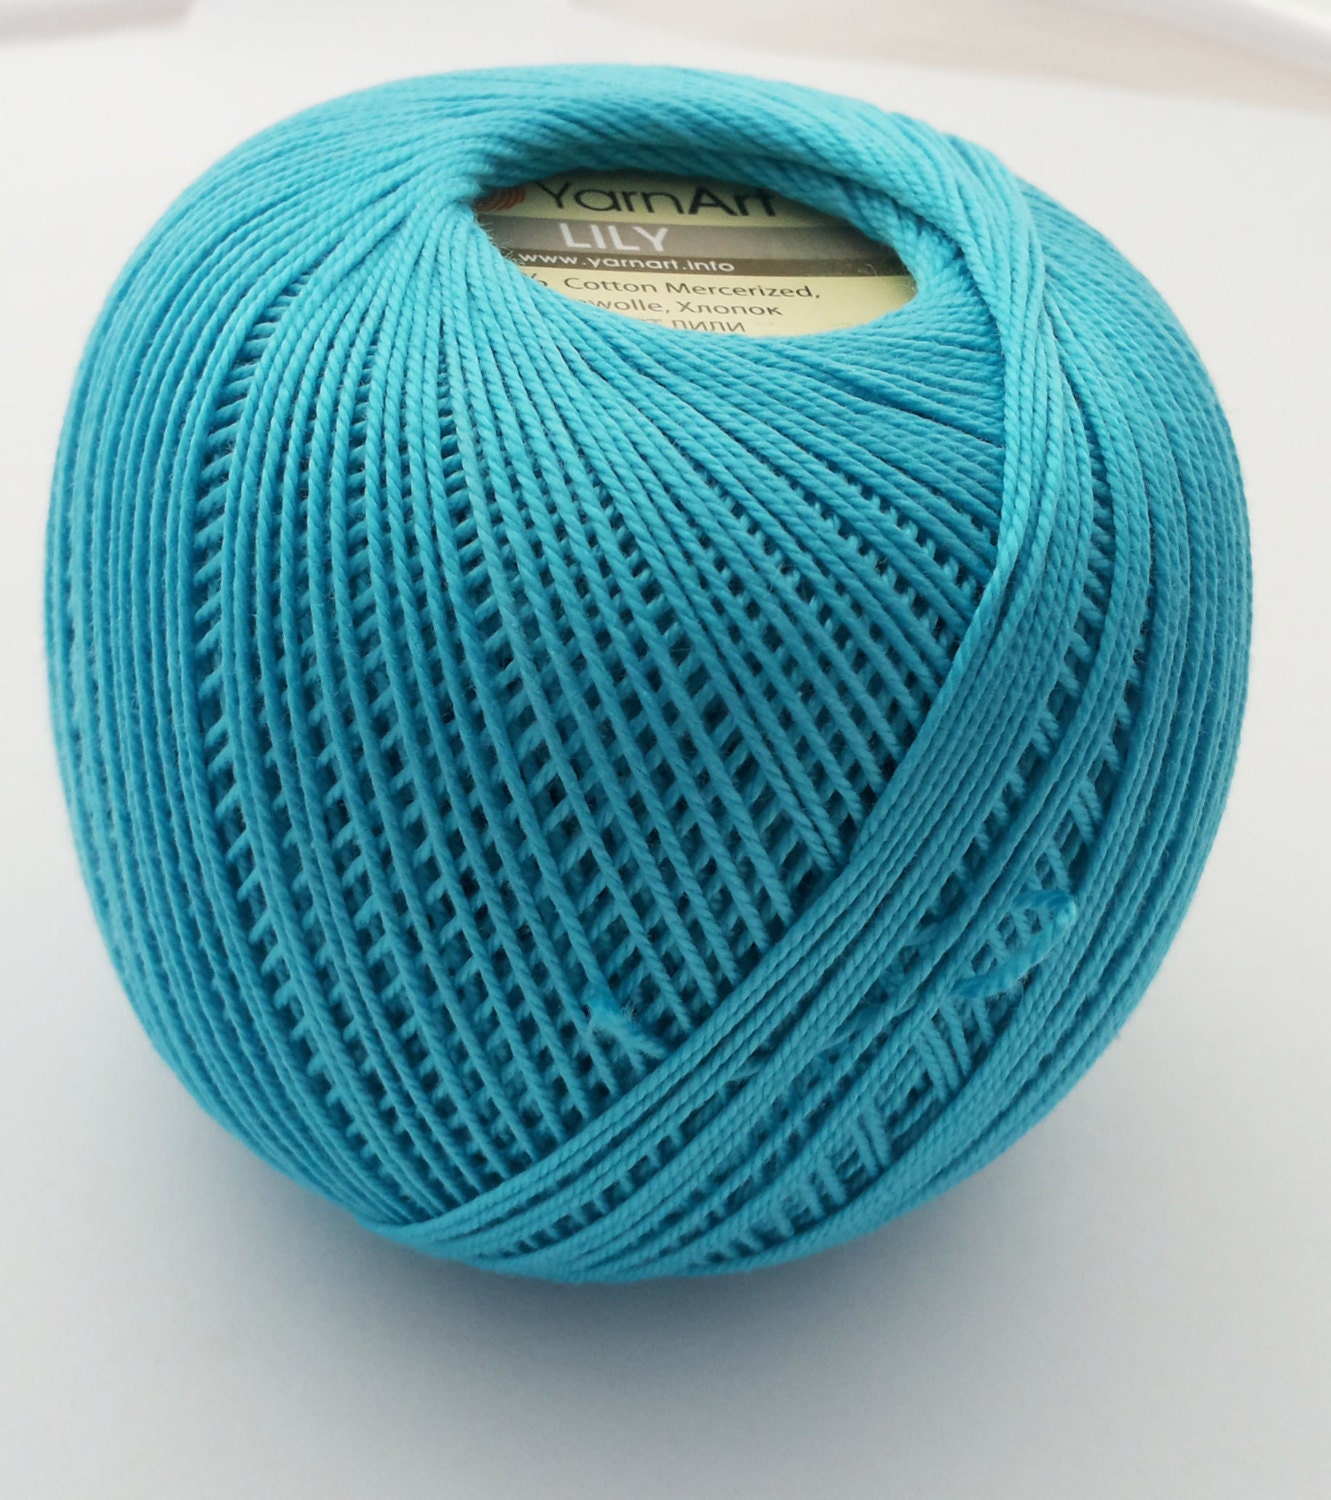 Tipos de hilo para crochet y amigurumi: ¿Hilo Mercerizado o No Mercerizado?  